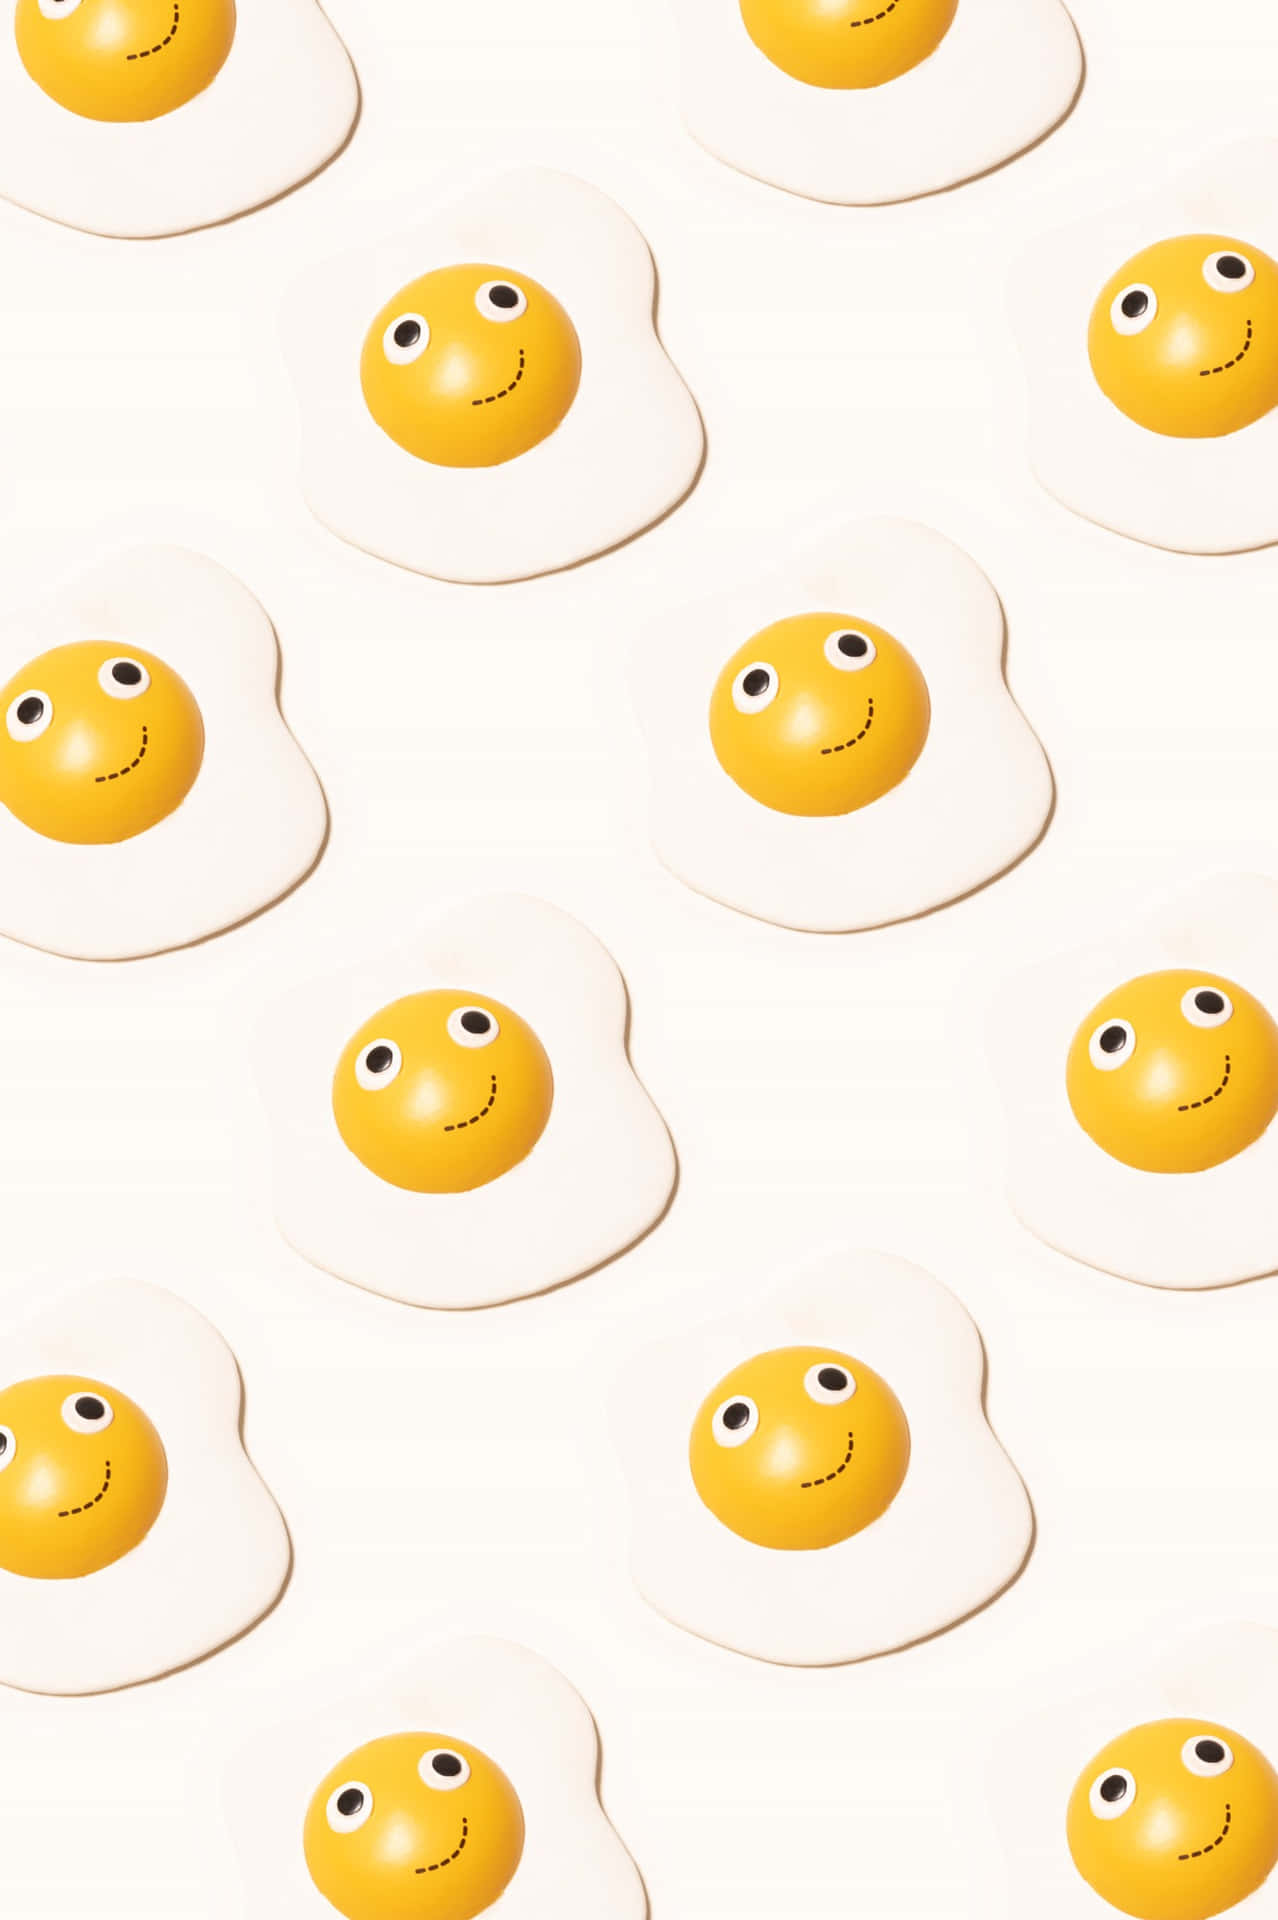 Caption: A Lively Smile Emoji Blended With Sunny Side Up Egg